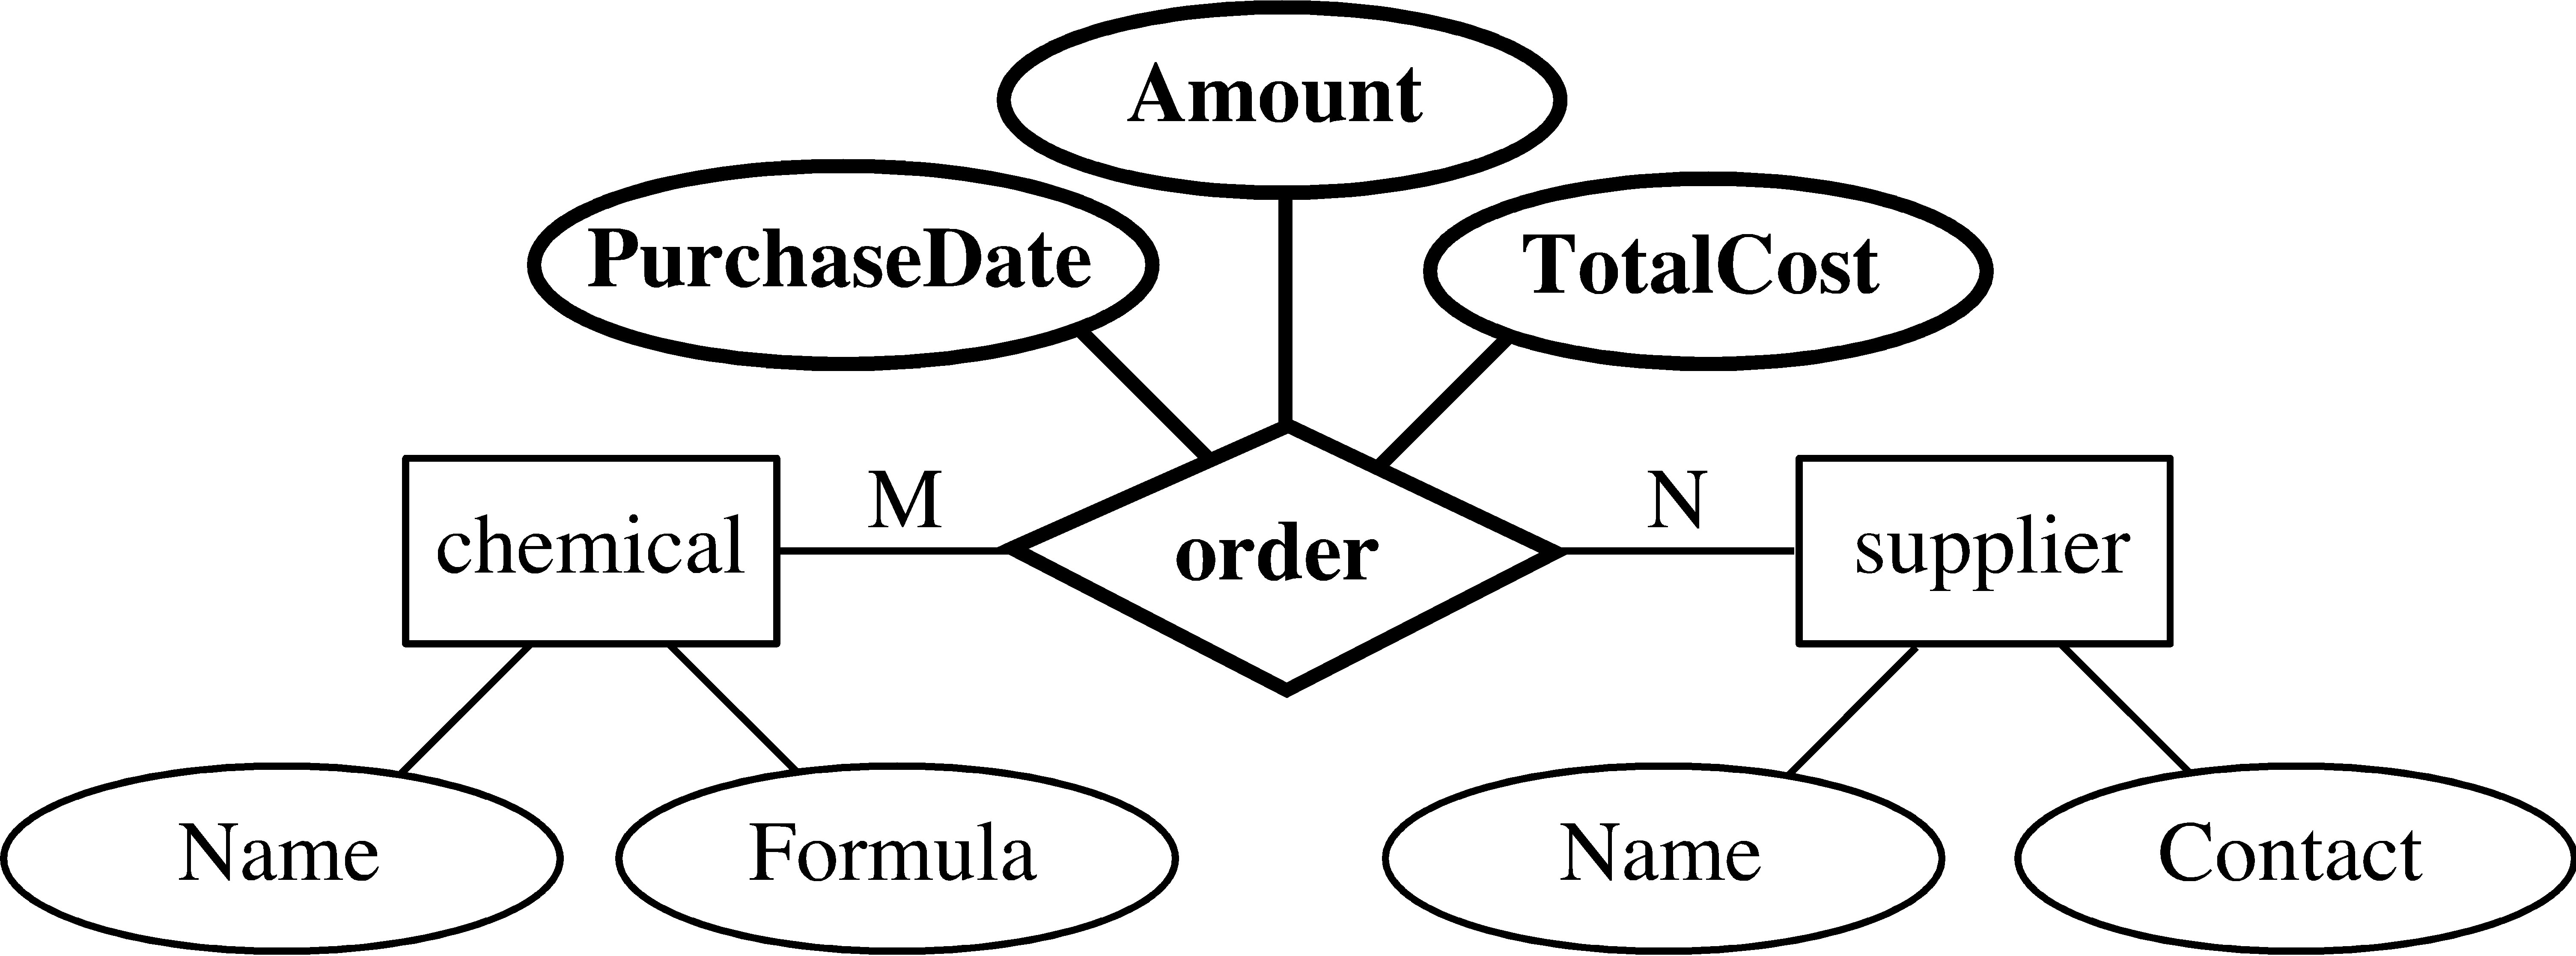 Entity-Relationship Model for Total Participation Er Diagram